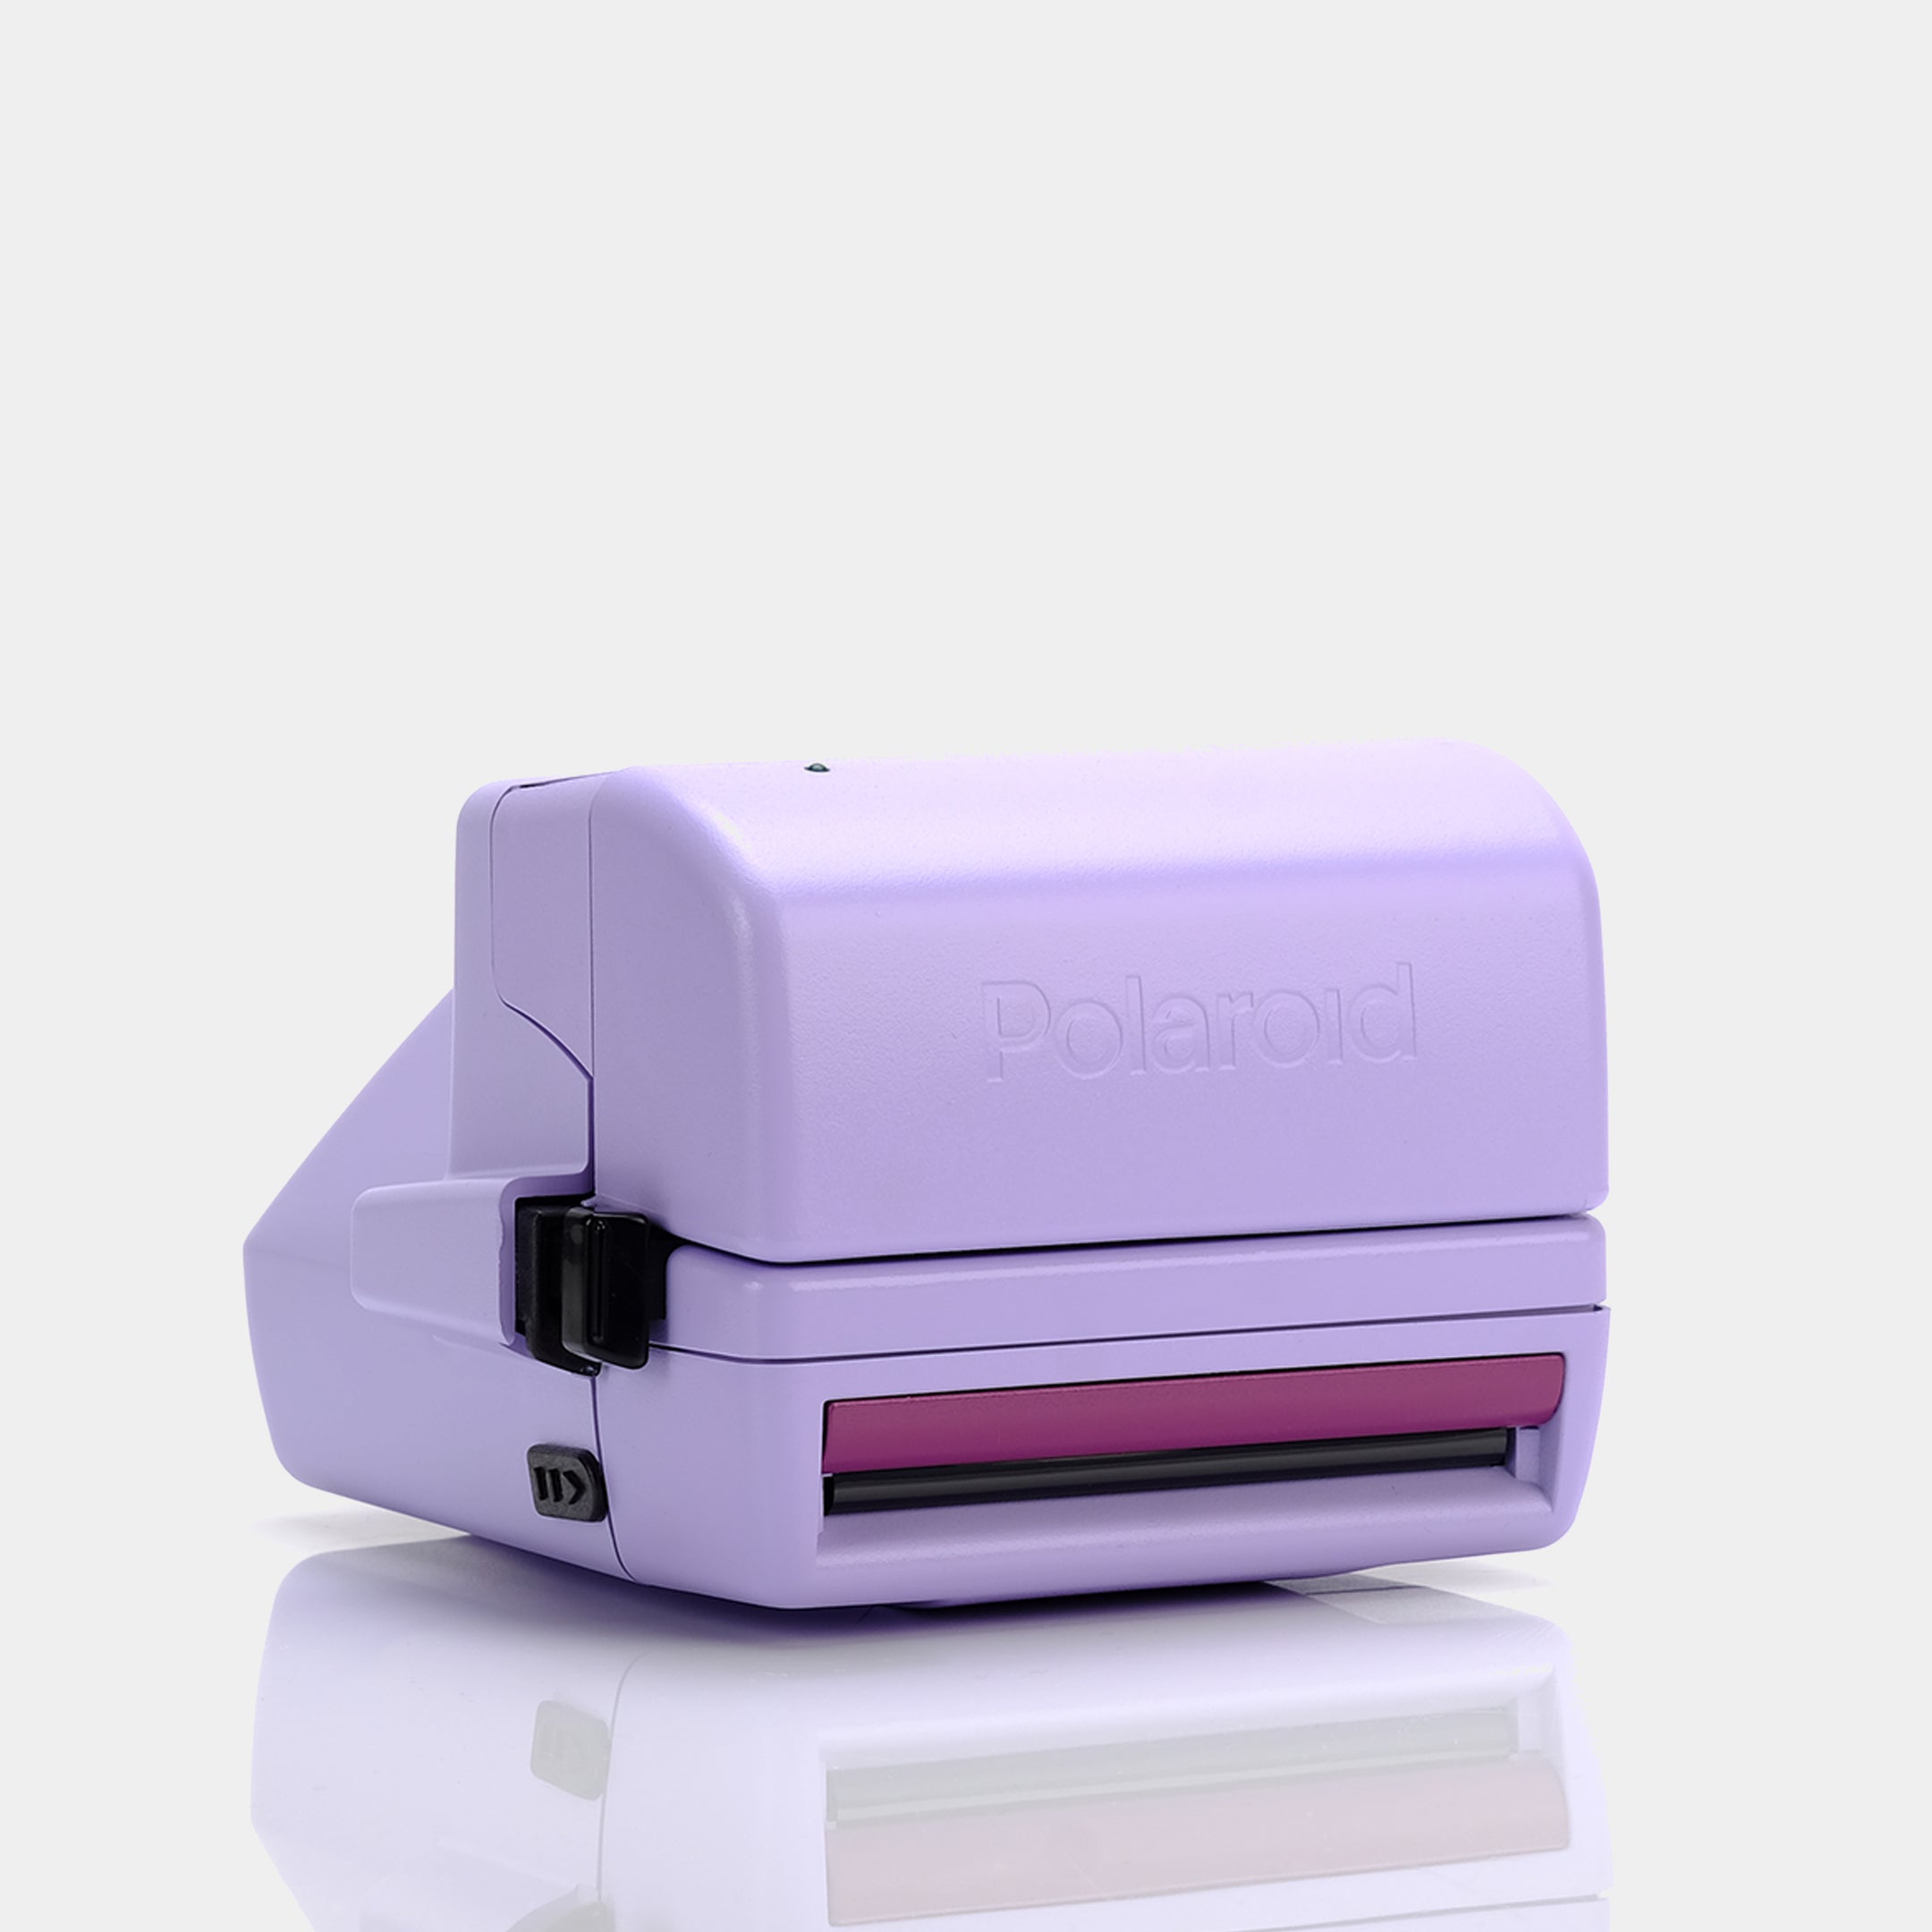 Polaroid 600 Cool Cam 90s Purple Instant Film Camera